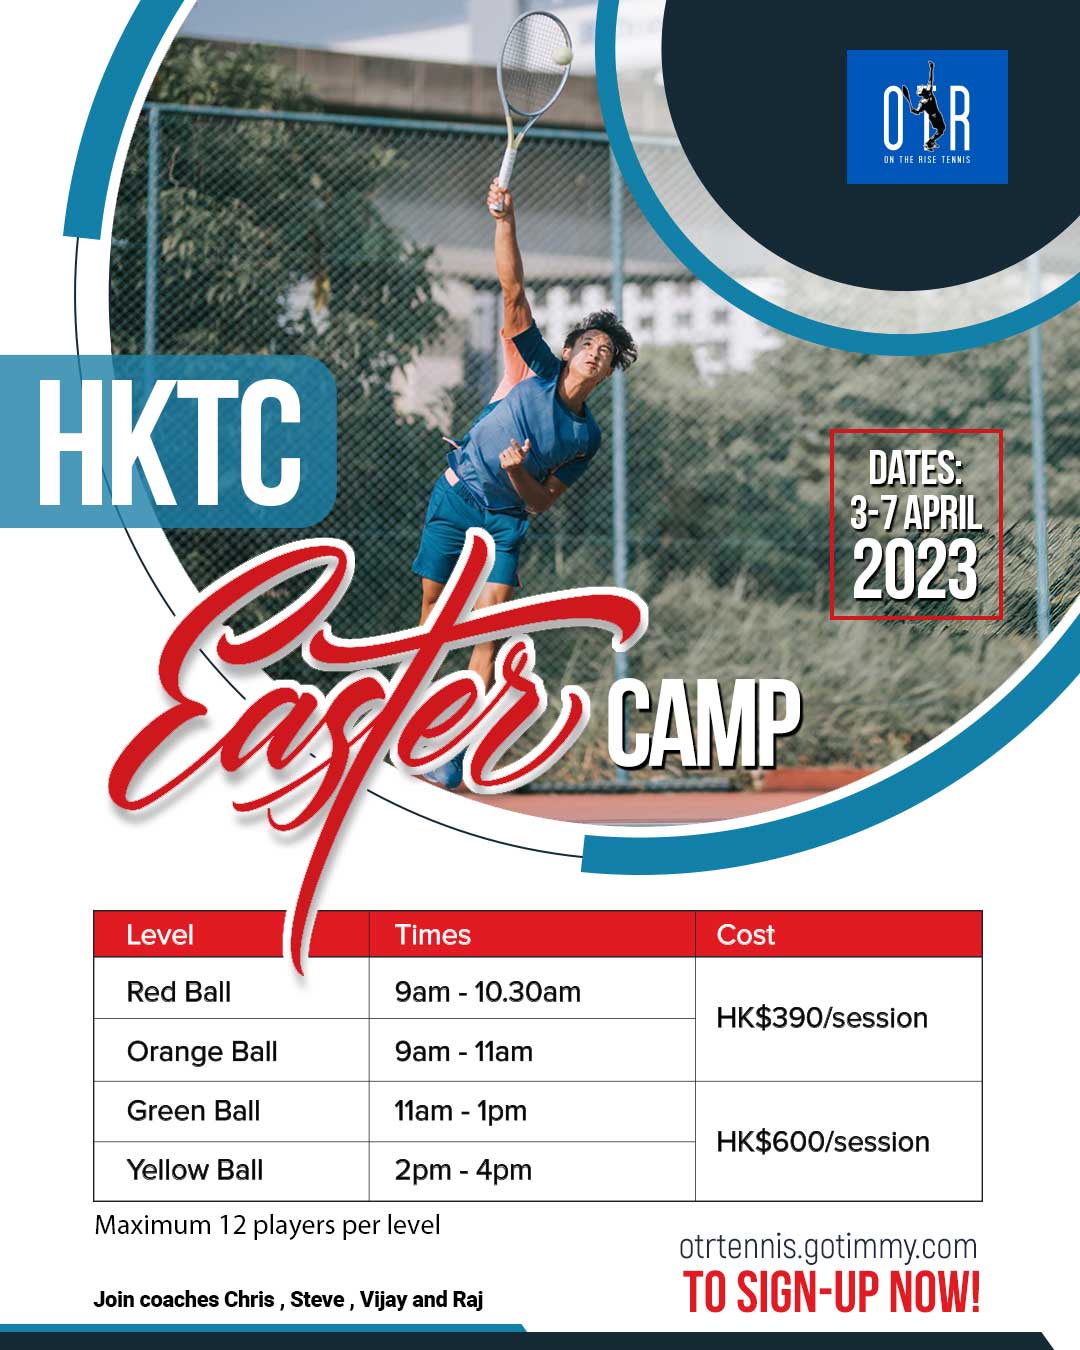 HKTC-Easter-Camp-2023